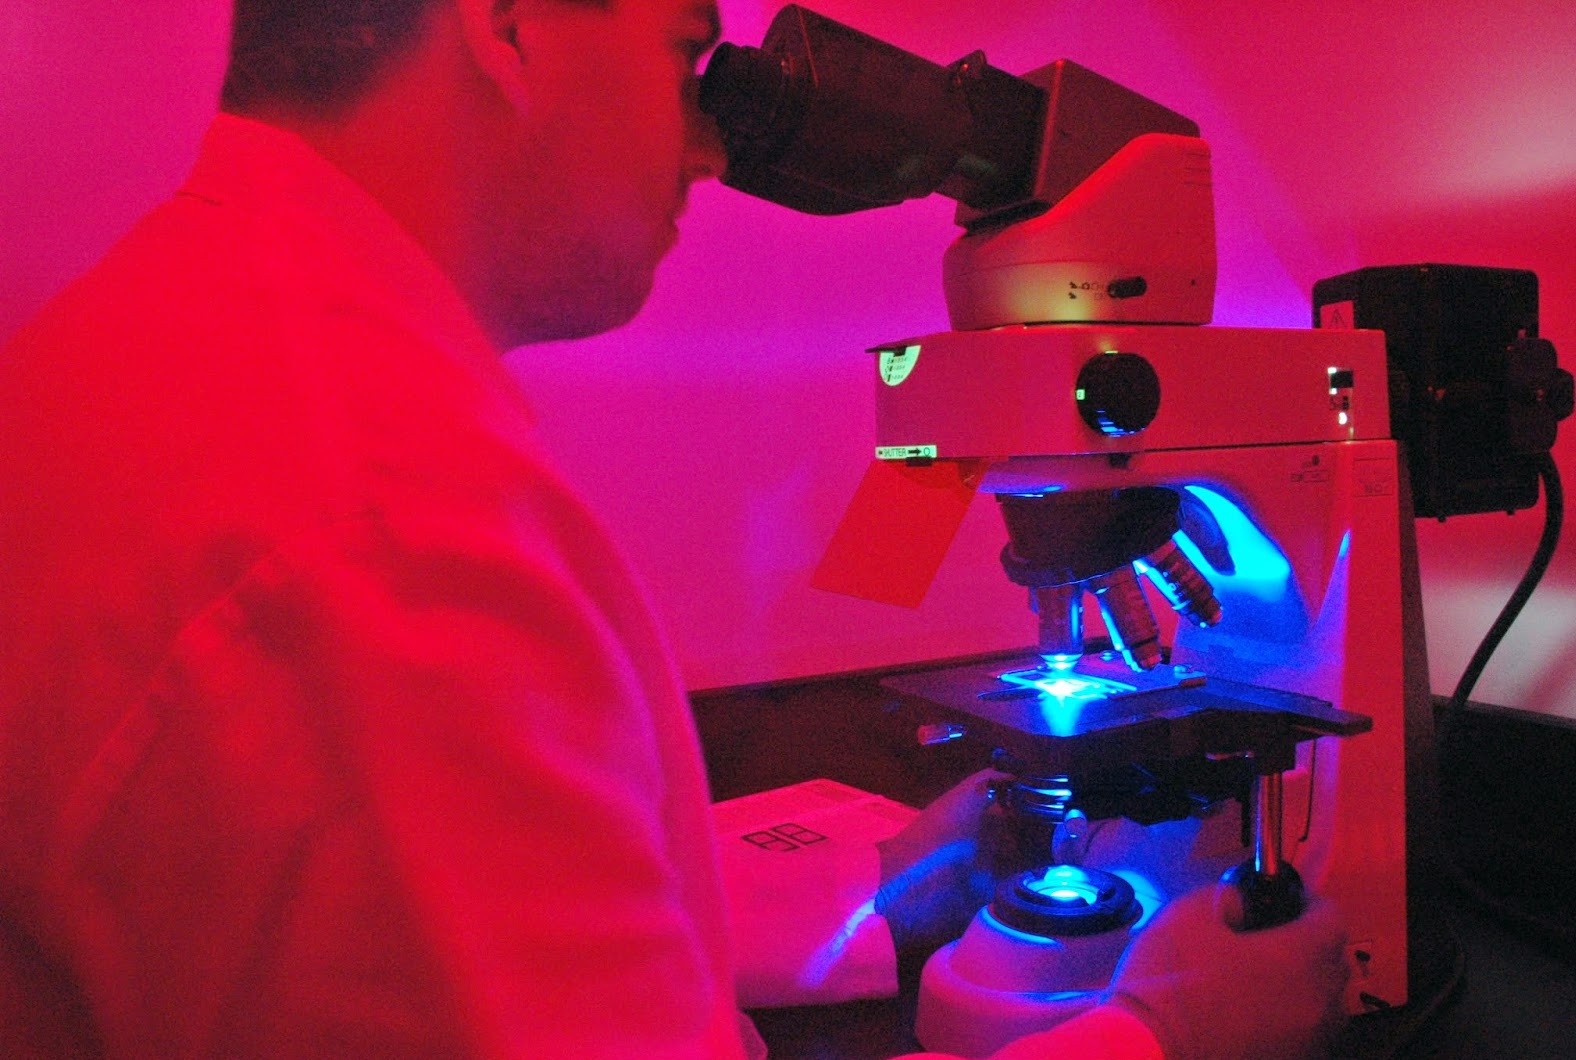 Sử dụng kính hiển vi huỳnh quang như thế nào cho đúng?